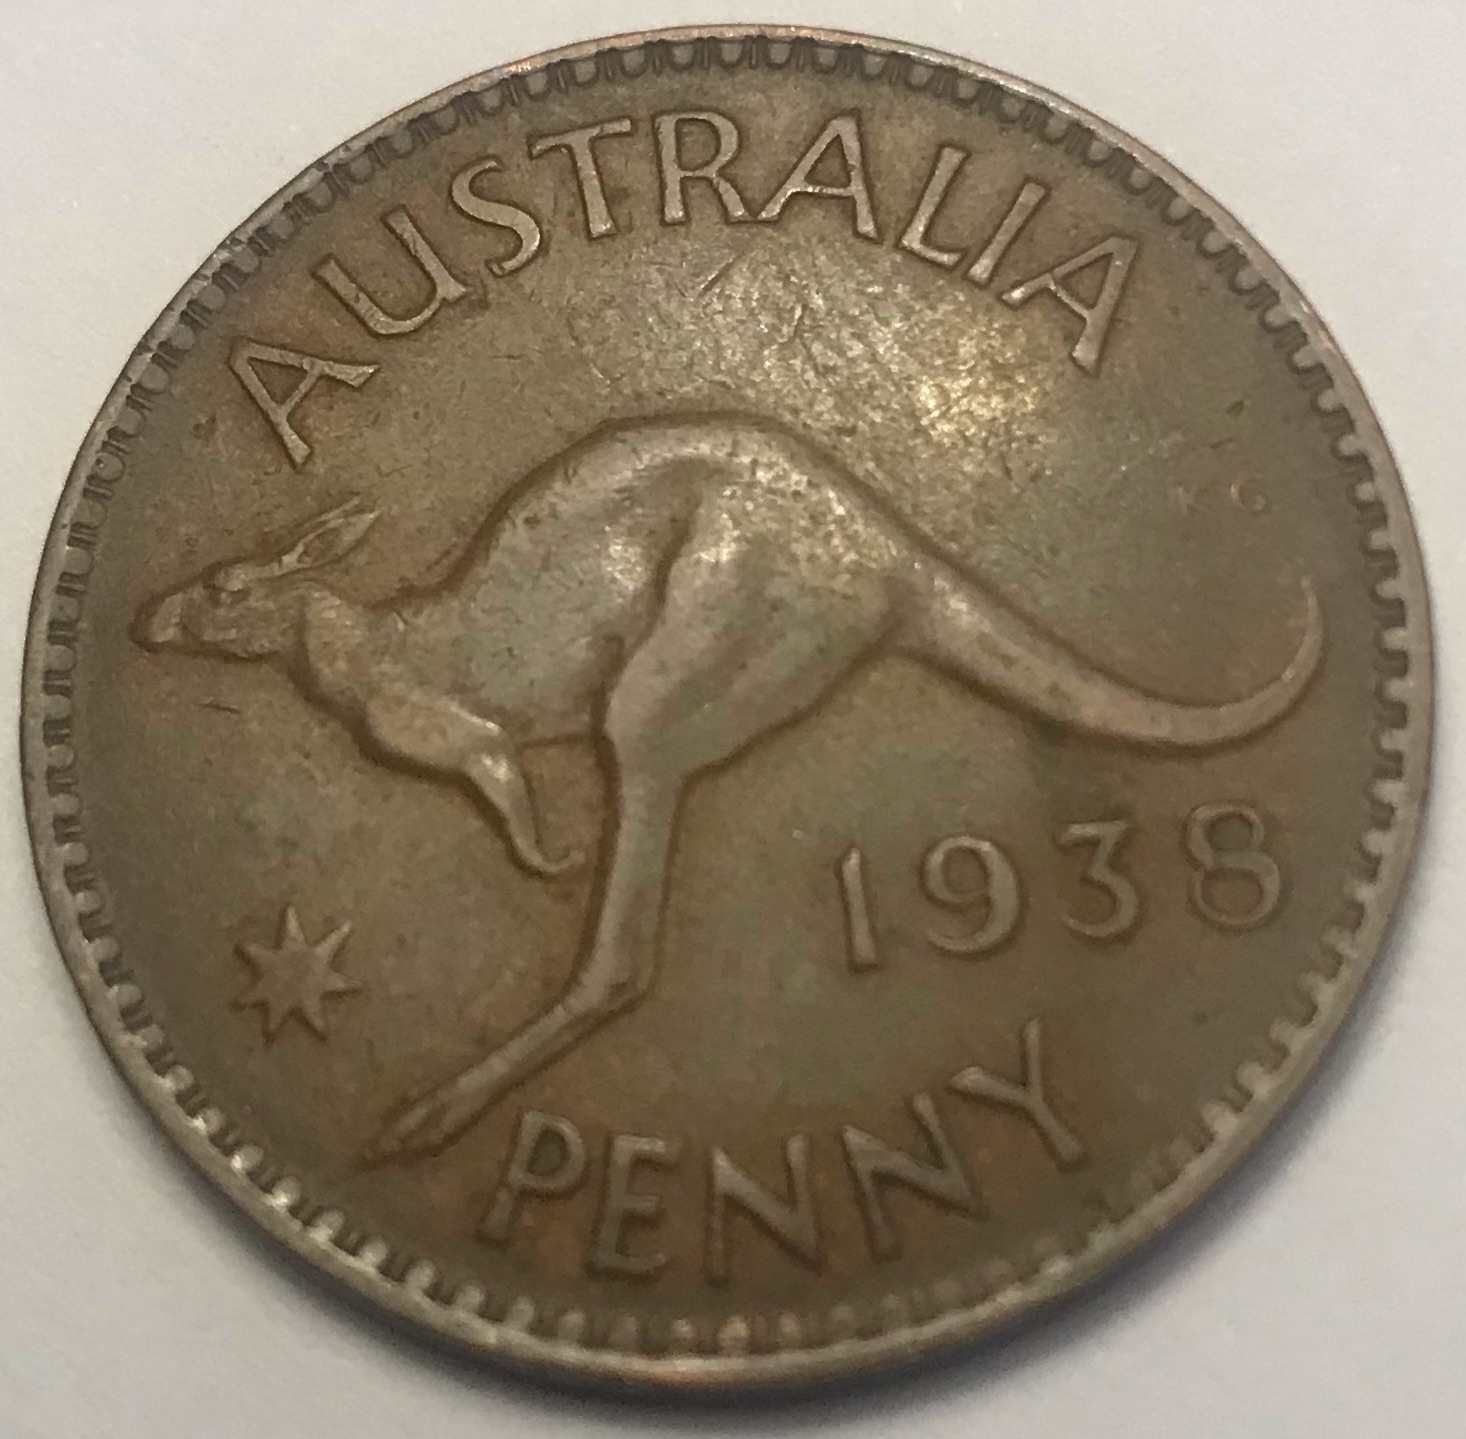 1938 Australian Penny Reverse.jpg